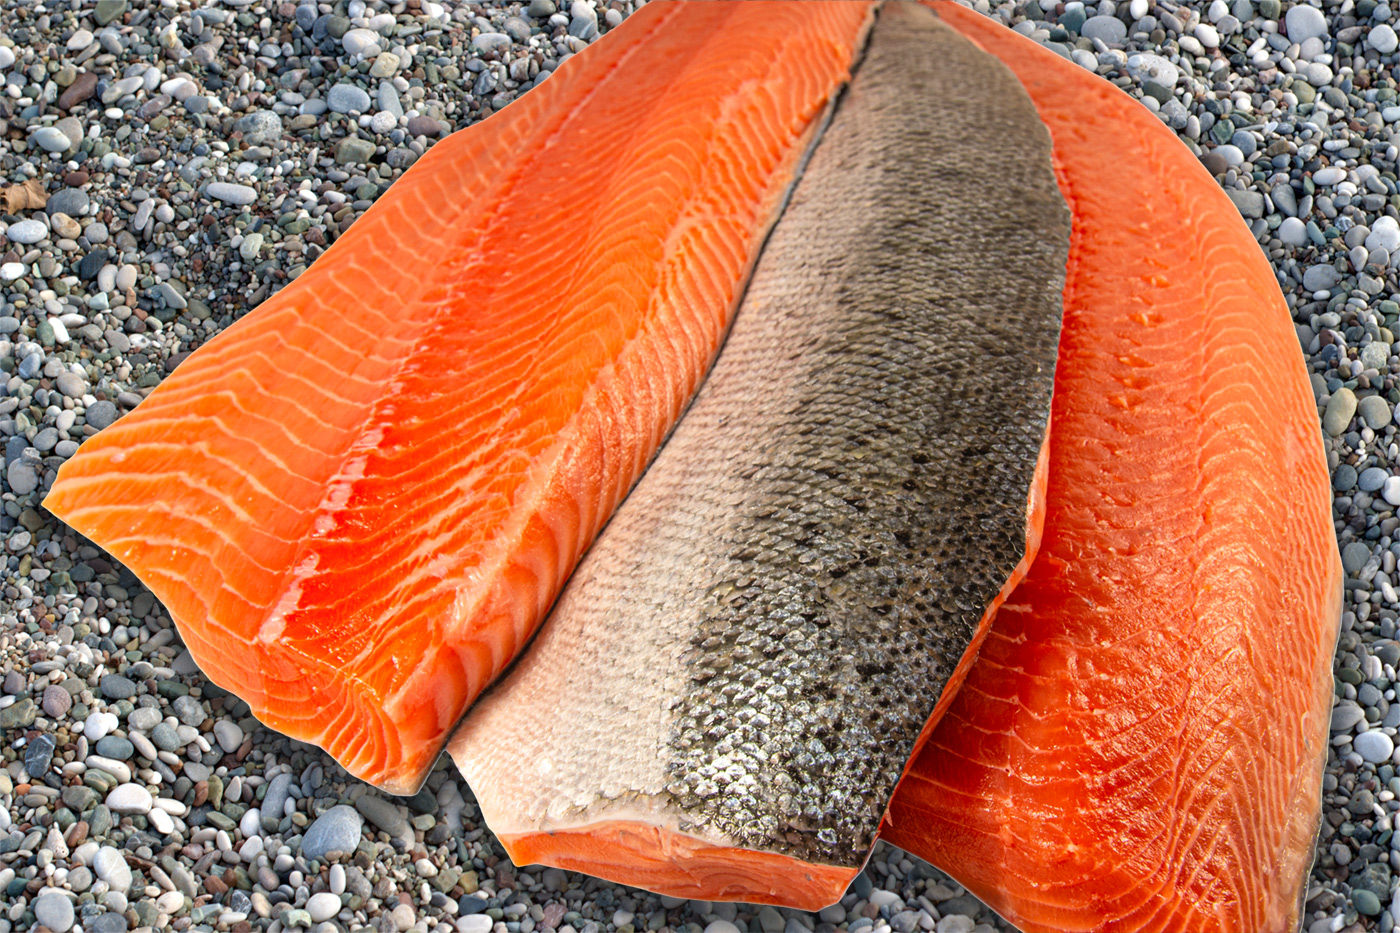 Reefnet caught Sockeye salmon fillet